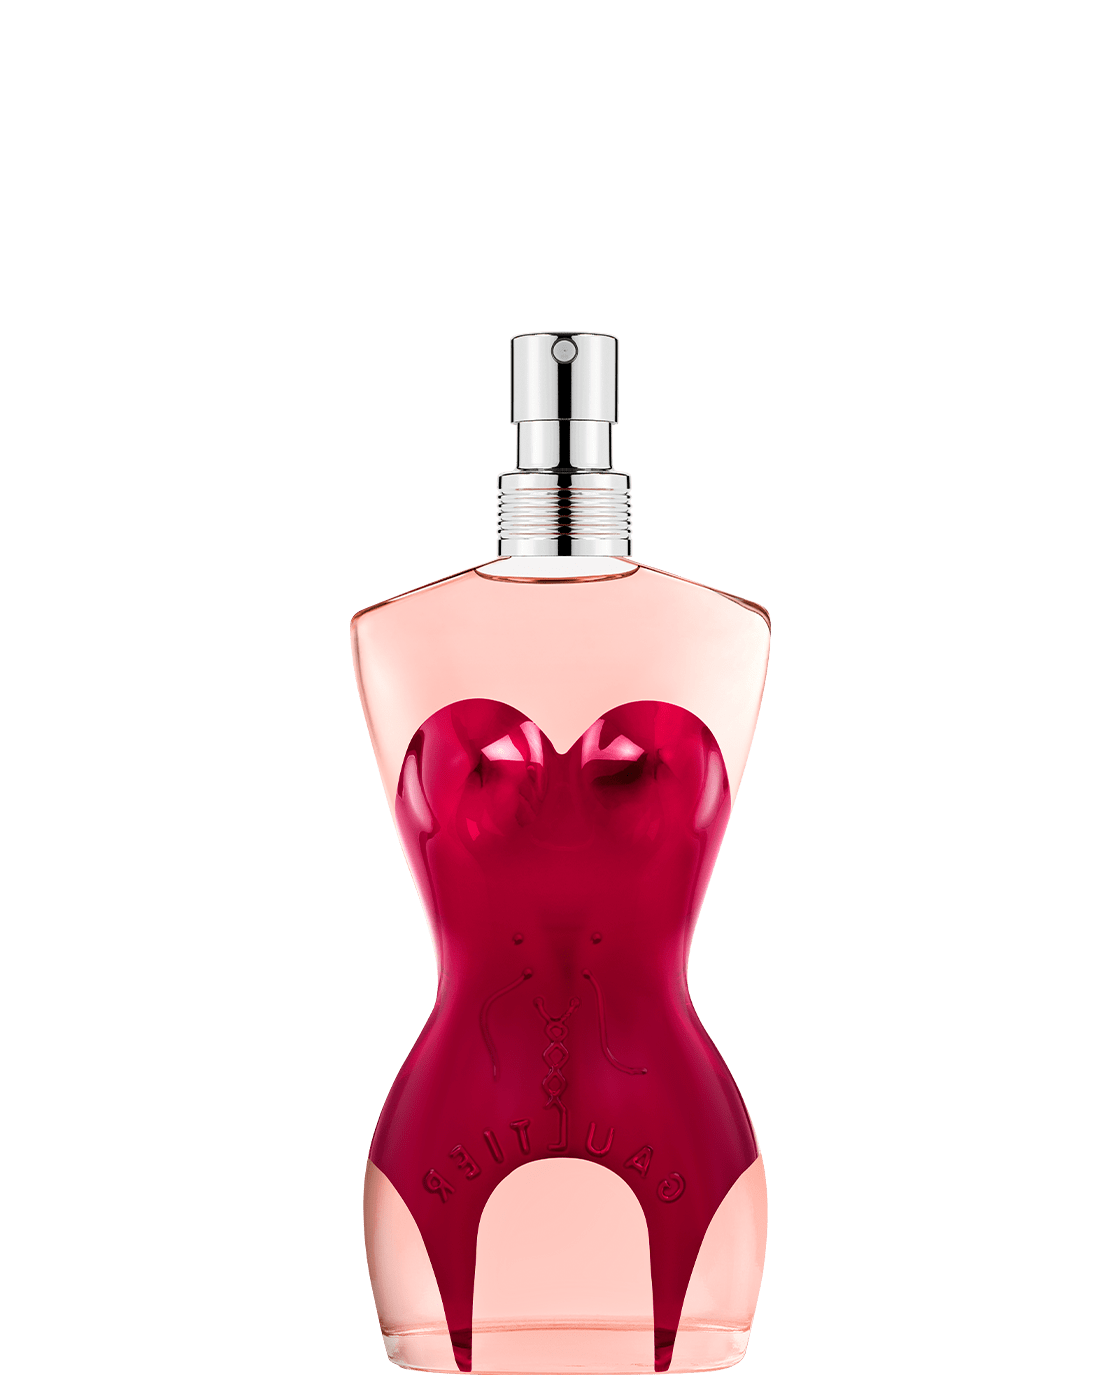 Classique Eau de Parfum for Women